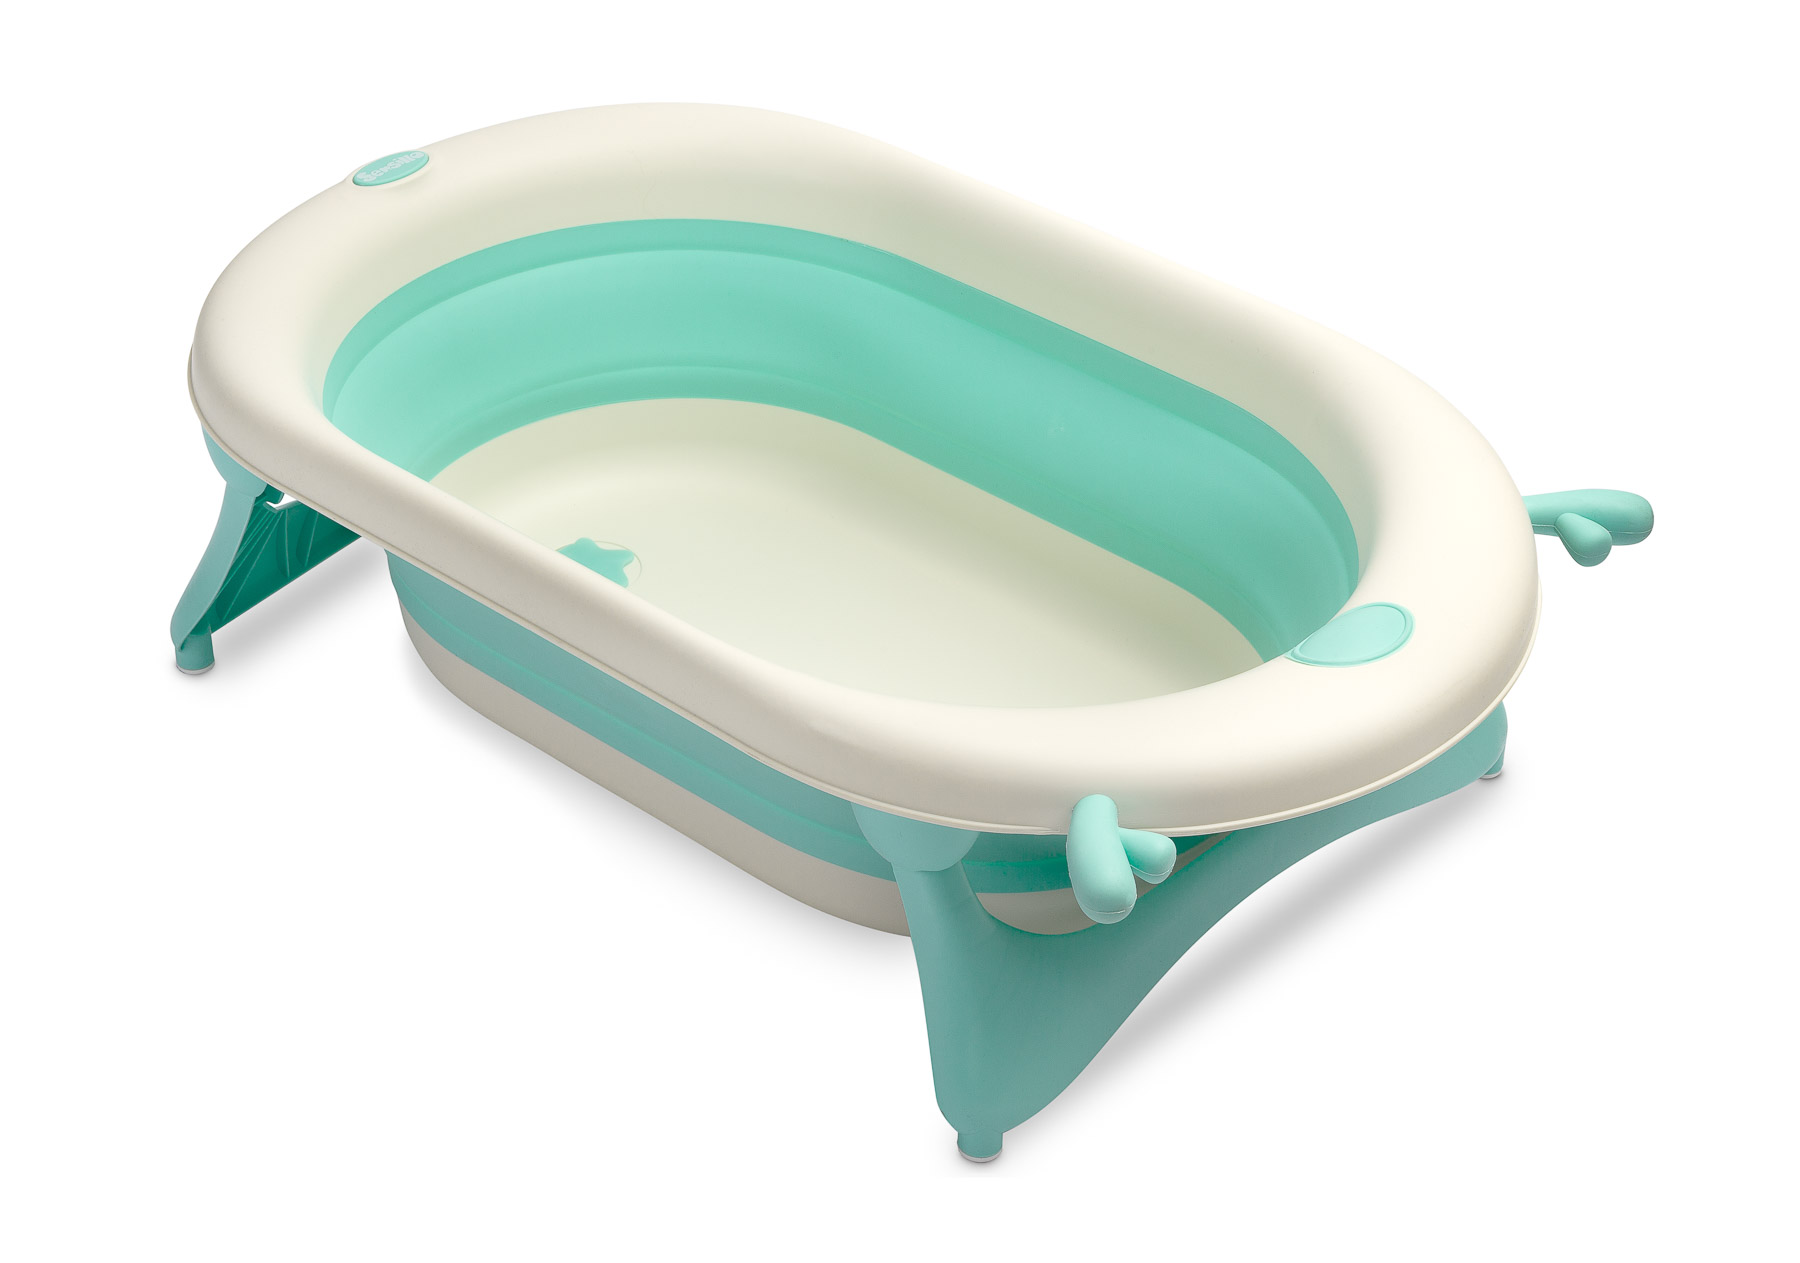 Foldable travel bath tub – green